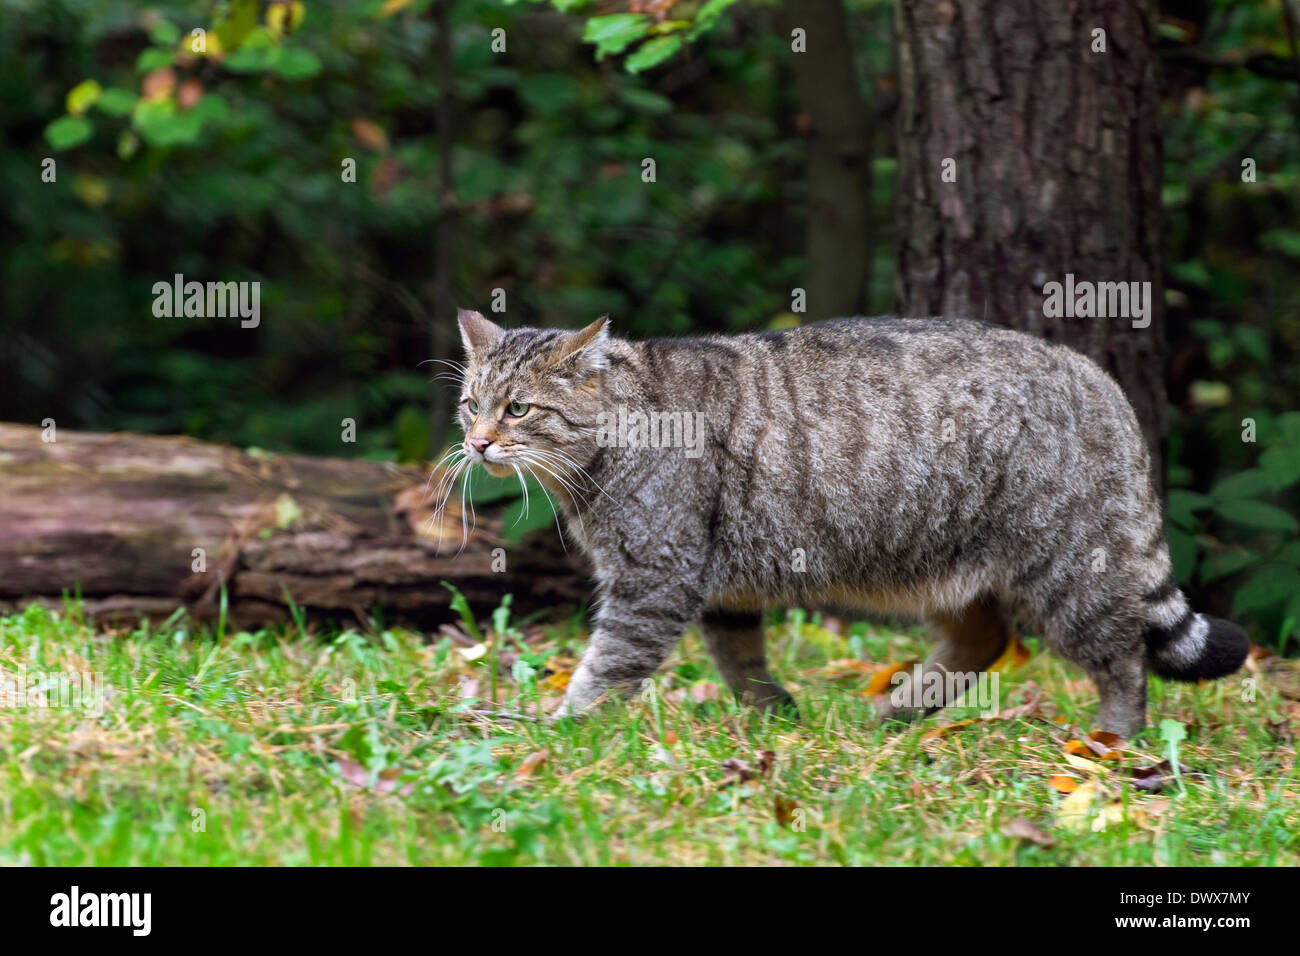 Gato montés europeo (Felis silvestris silvestris) caminando en el bosque Foto de stock